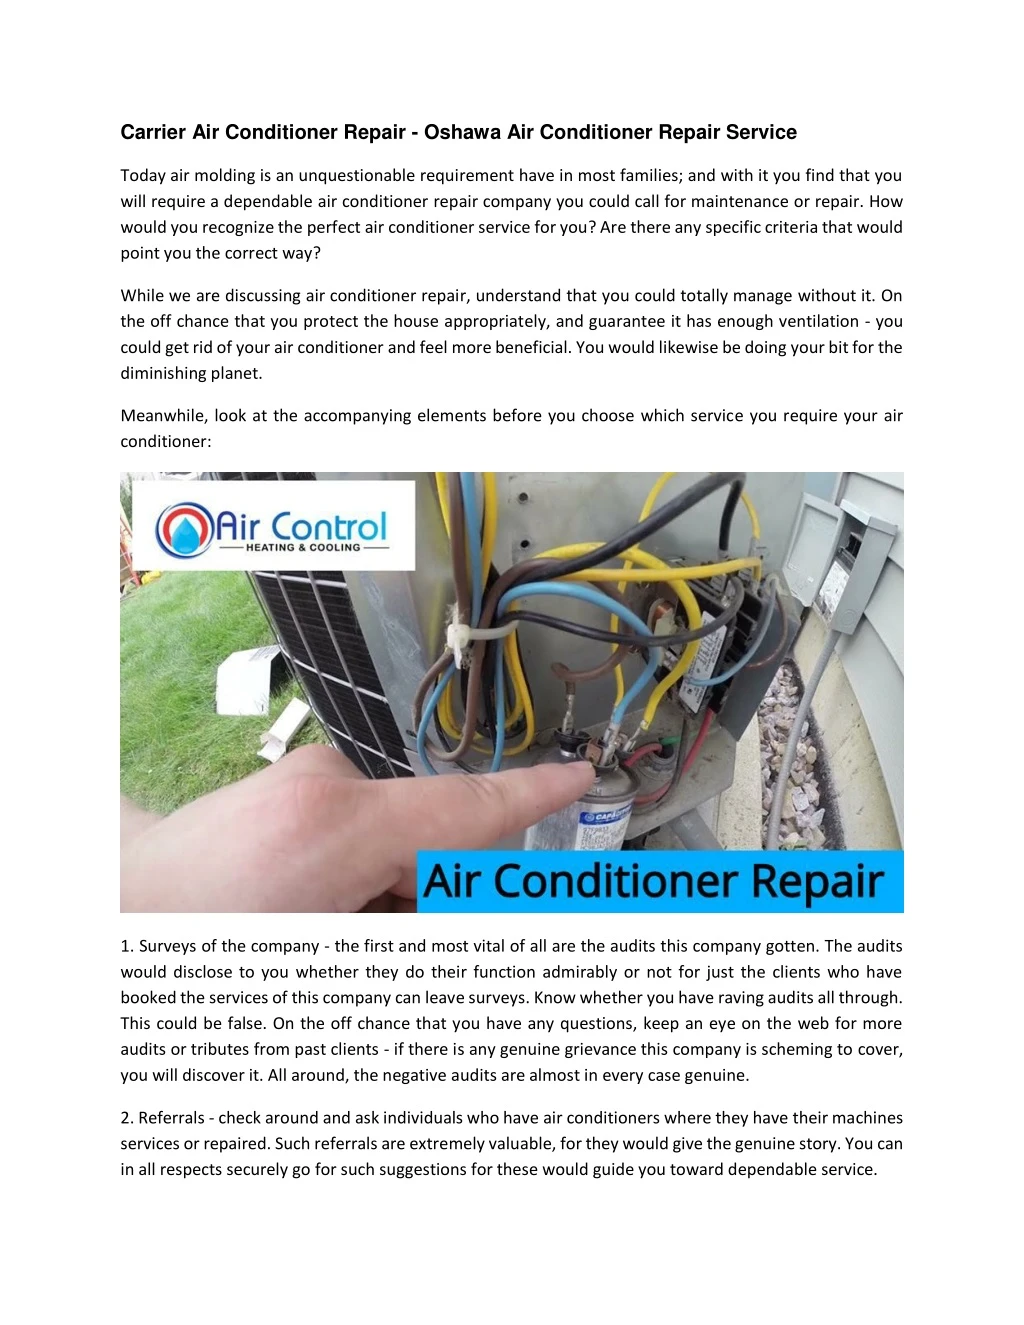 carrier air conditioner repair oshawa n.